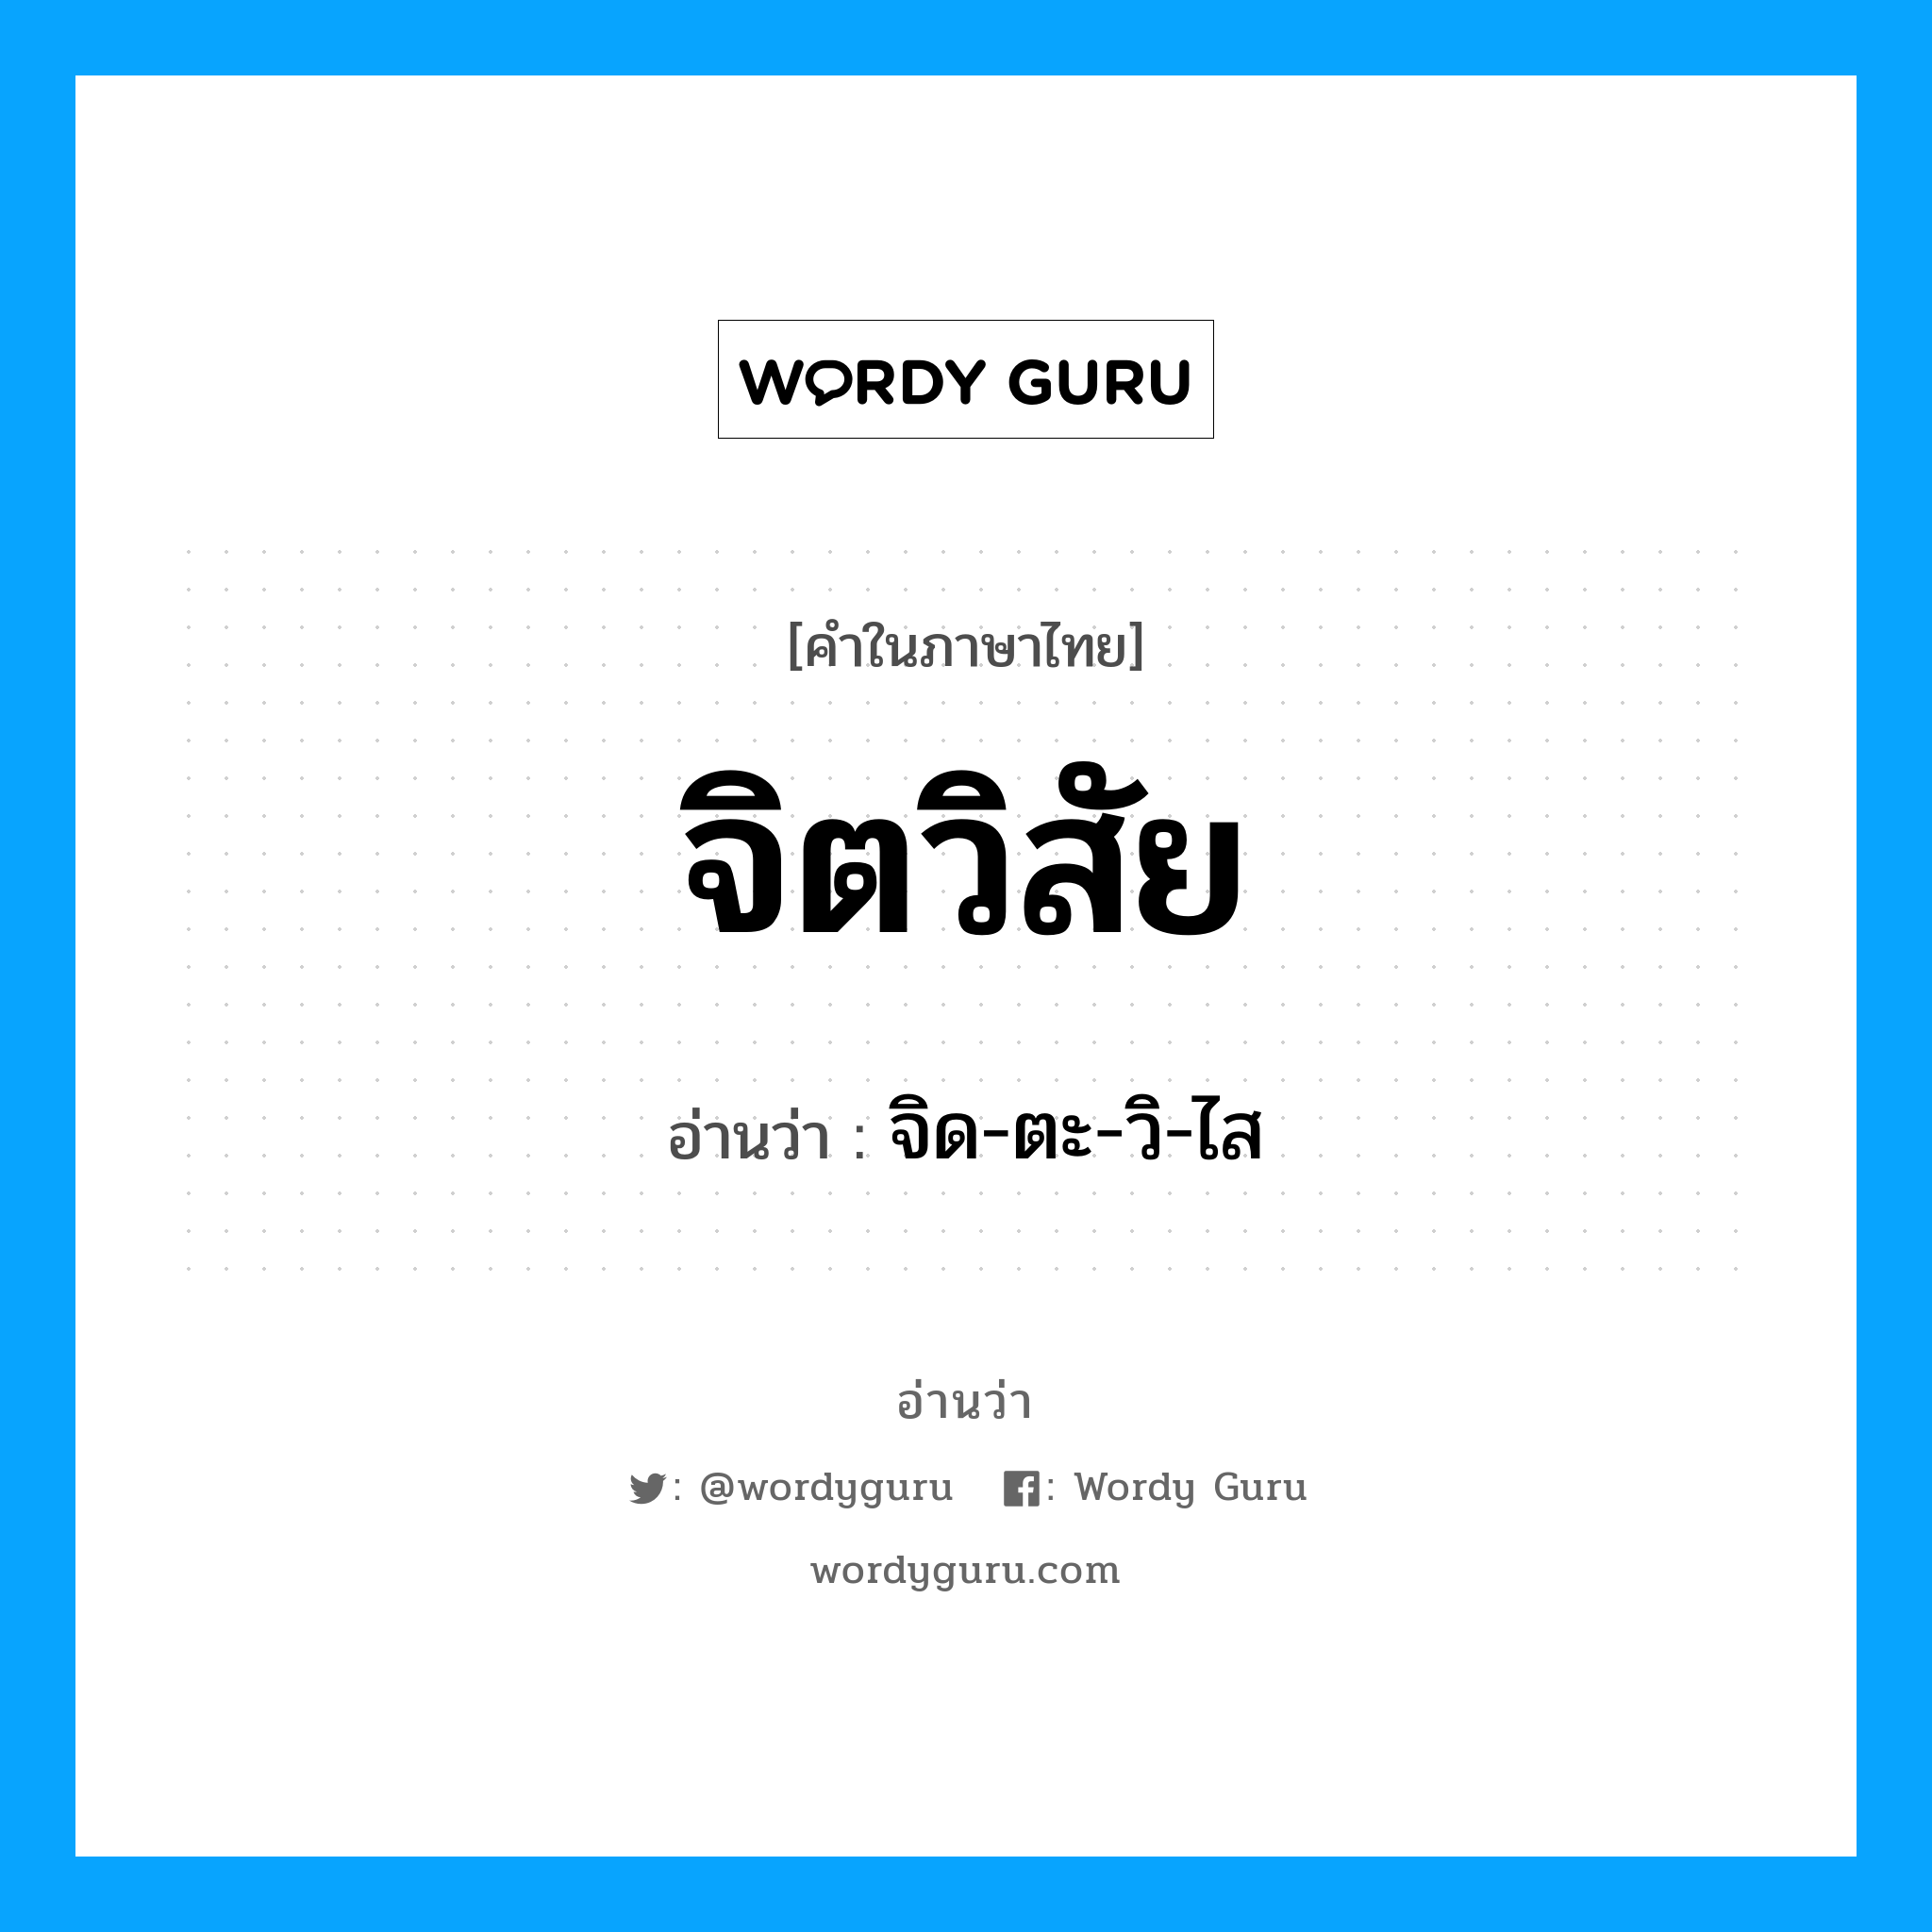 จิด-ตะ-วิ-ไส เป็นคำอ่านของคำไหน?, คำในภาษาไทย จิด-ตะ-วิ-ไส อ่านว่า จิตวิสัย